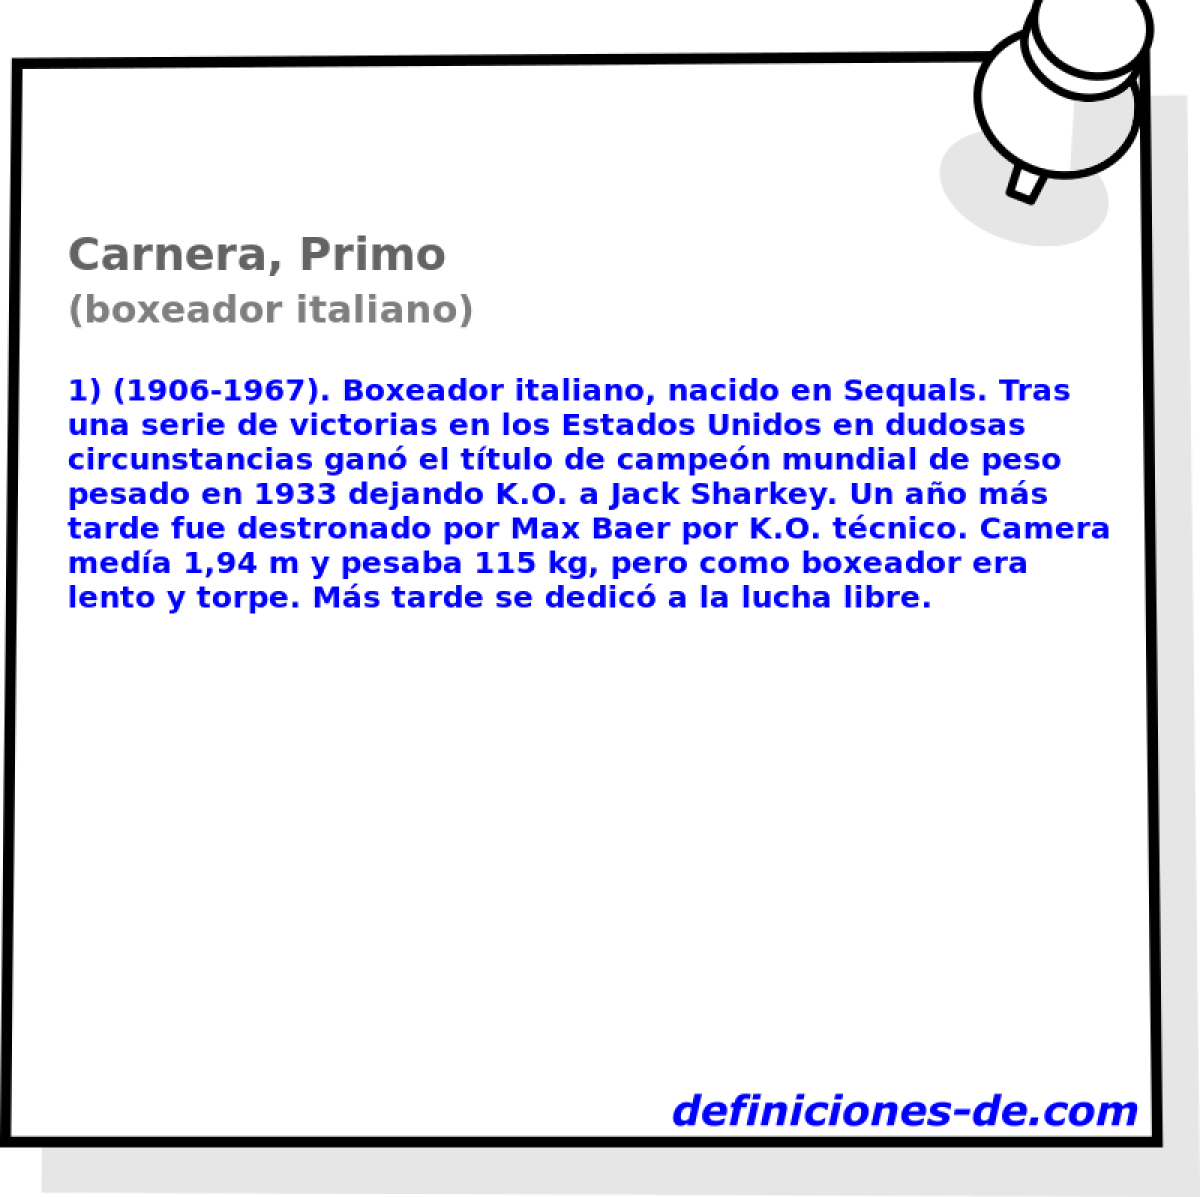 Carnera, Primo (boxeador italiano)